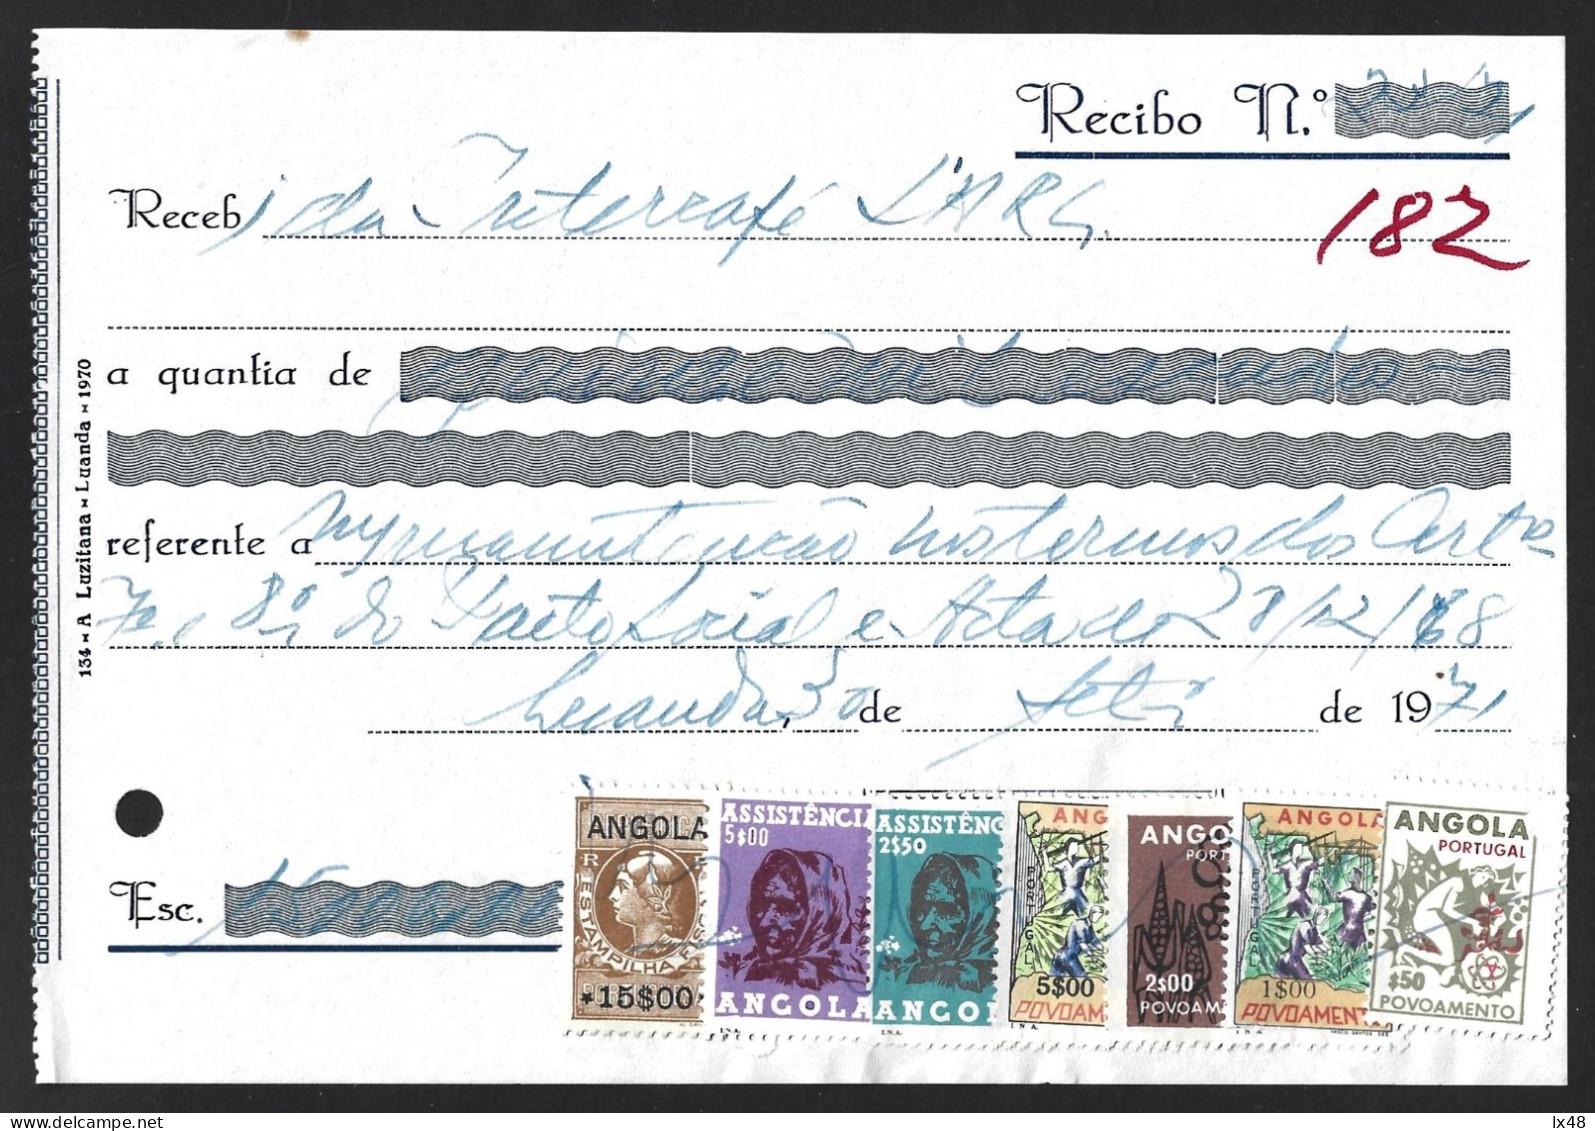 Recibo Emitido Em Luanda 1971 Com Stamp Fiscal 15$00 E 6 Stamps De Correio Usados Como Fiscais Da Assistência E Povoamen - Lettres & Documents